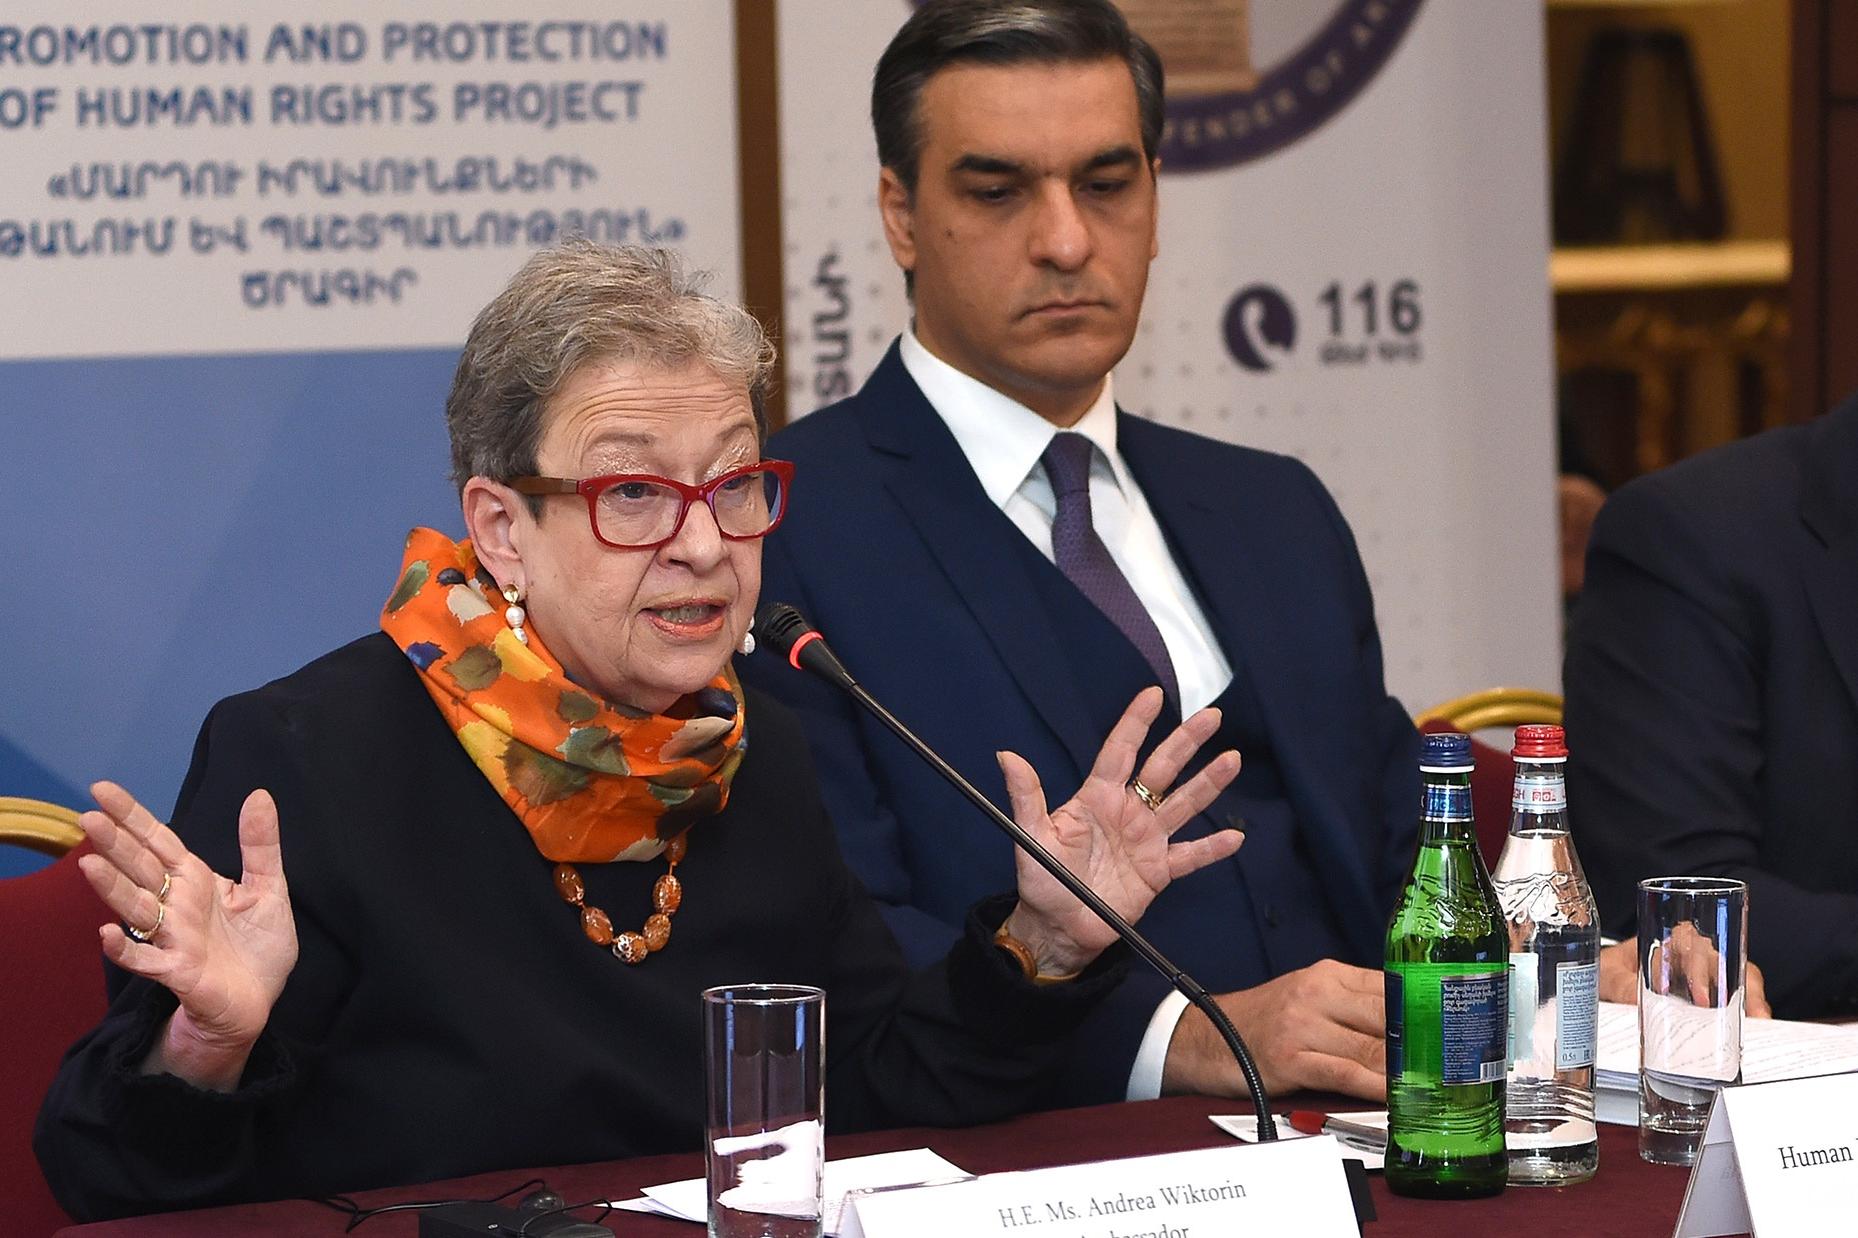 В Армении фиксируются частные случаи давления на СМИ - посол ЕС